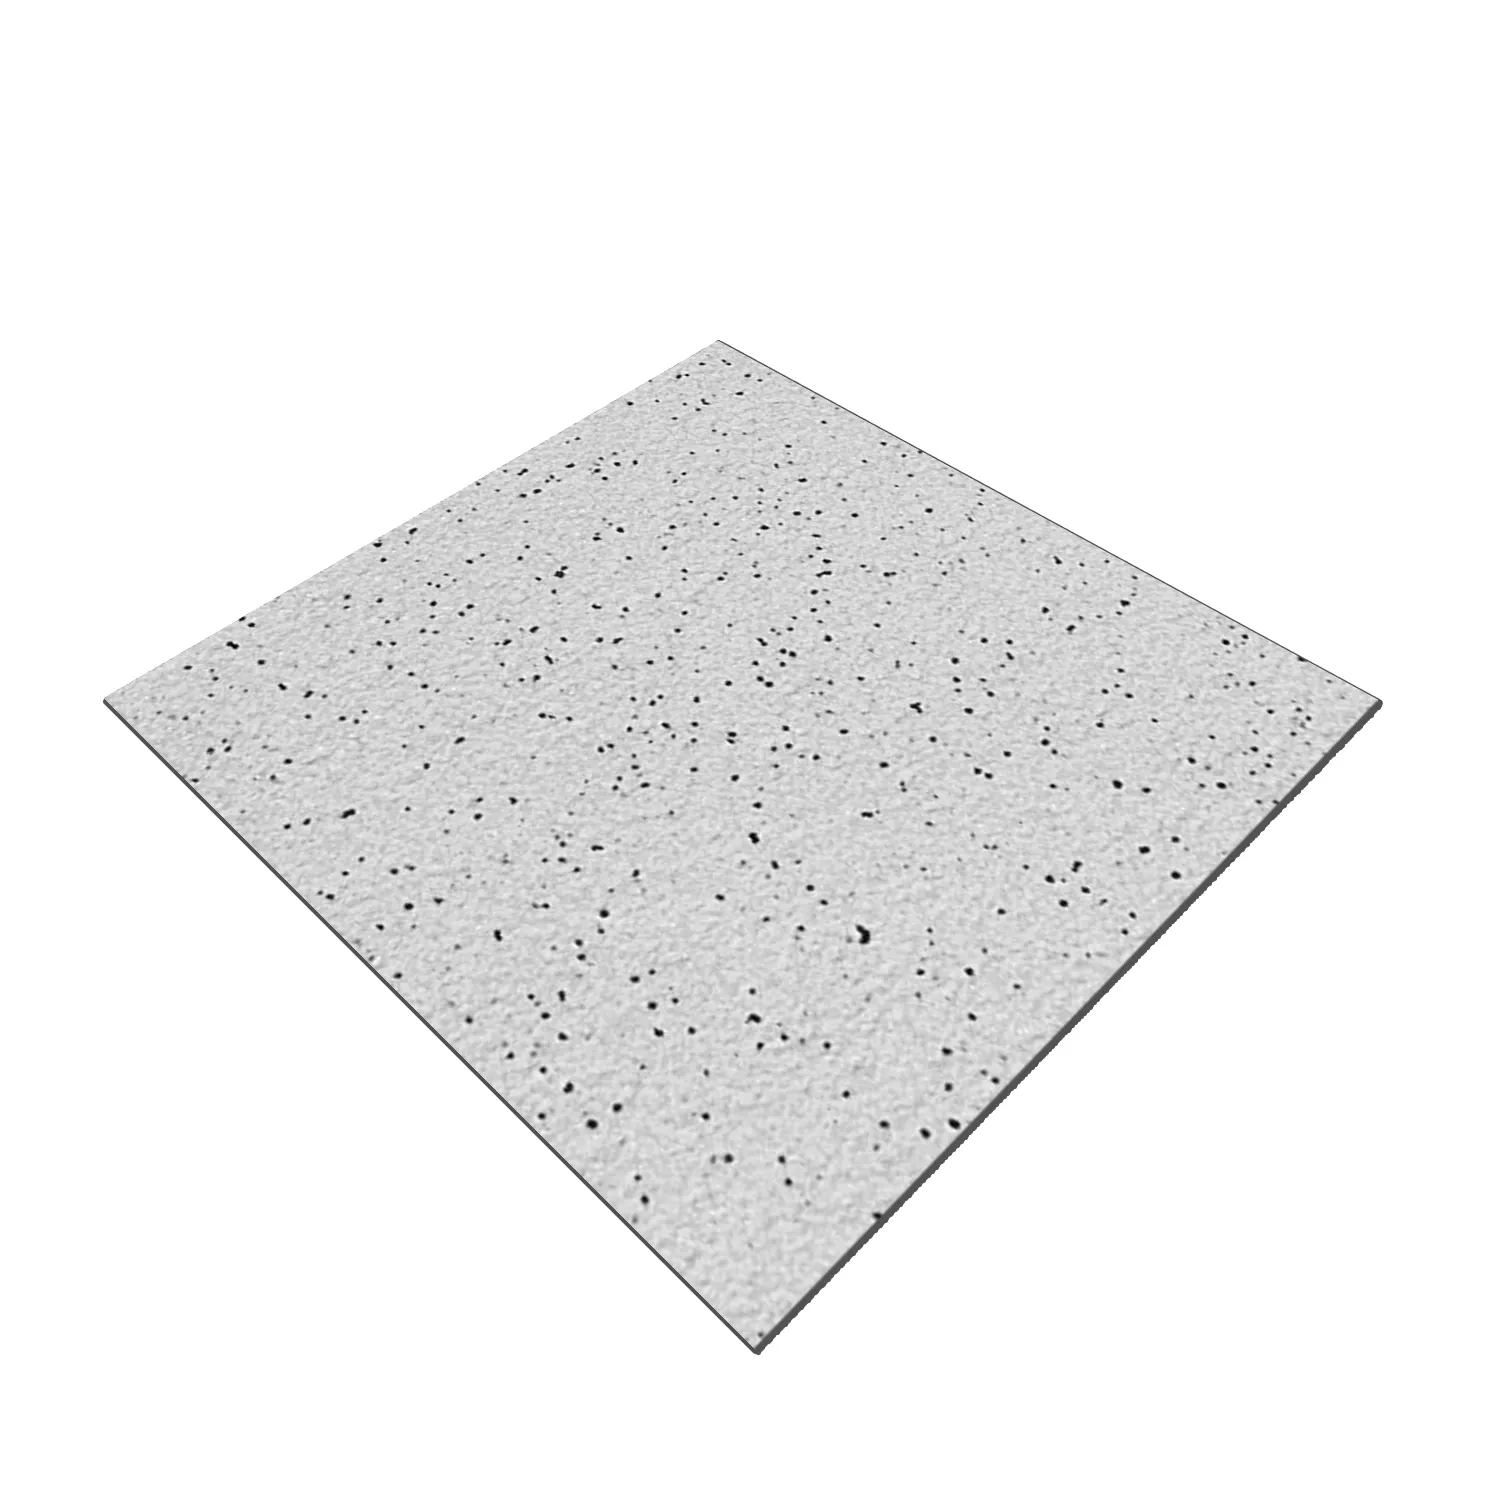 Sample Floor Tiles Fine Grain R11/B Grey 30x30cm